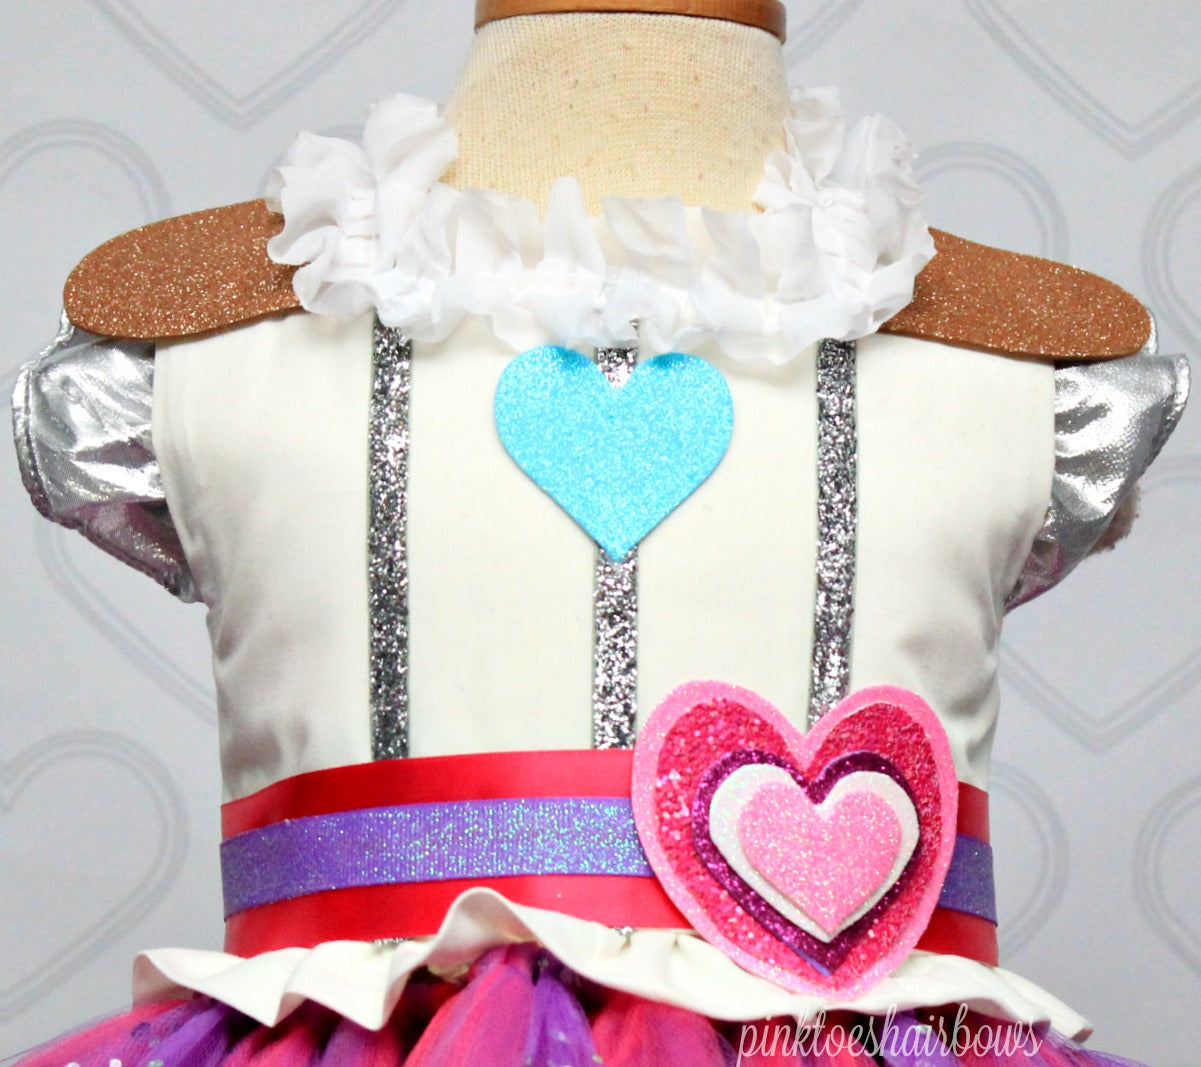 Nella the Princess Knight Dress-Nella the Princess Knight costume-Nella the Princess Knight tutu dress